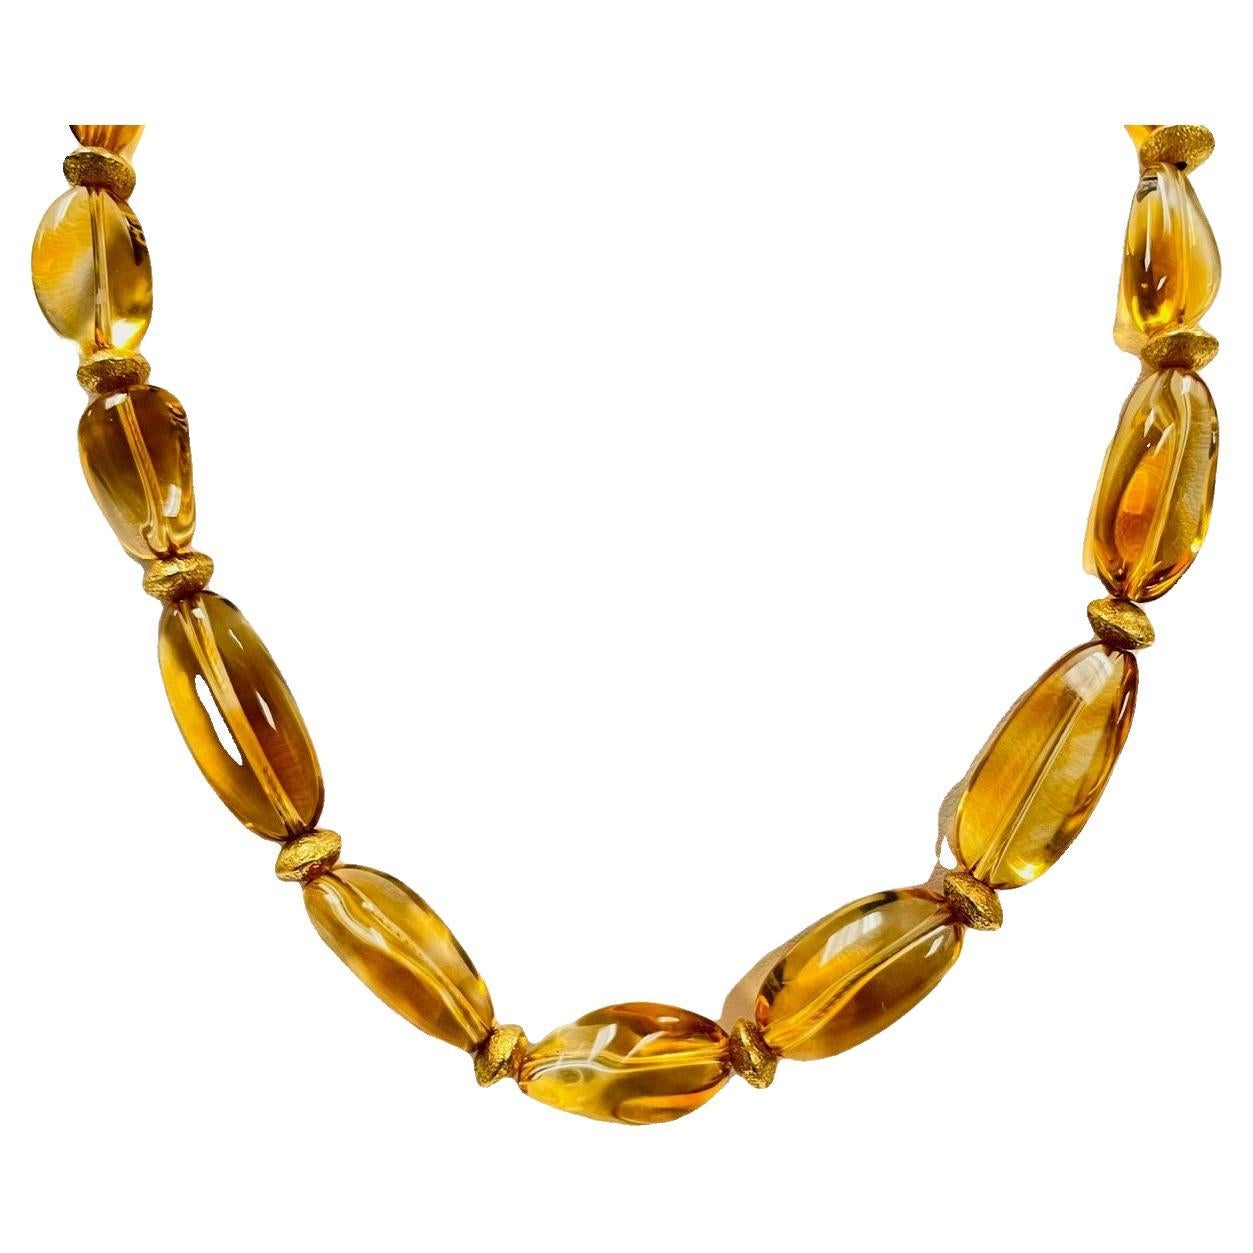 Ce joli brin de  La perle de citrine baroque est unique en son genre.  Elle comporte 17 perles de citrine dorée de tailles différentes qui présentent de belles variations de couleurs chaudes et lumineuses à l'intérieur de chaque pierre précieuse !